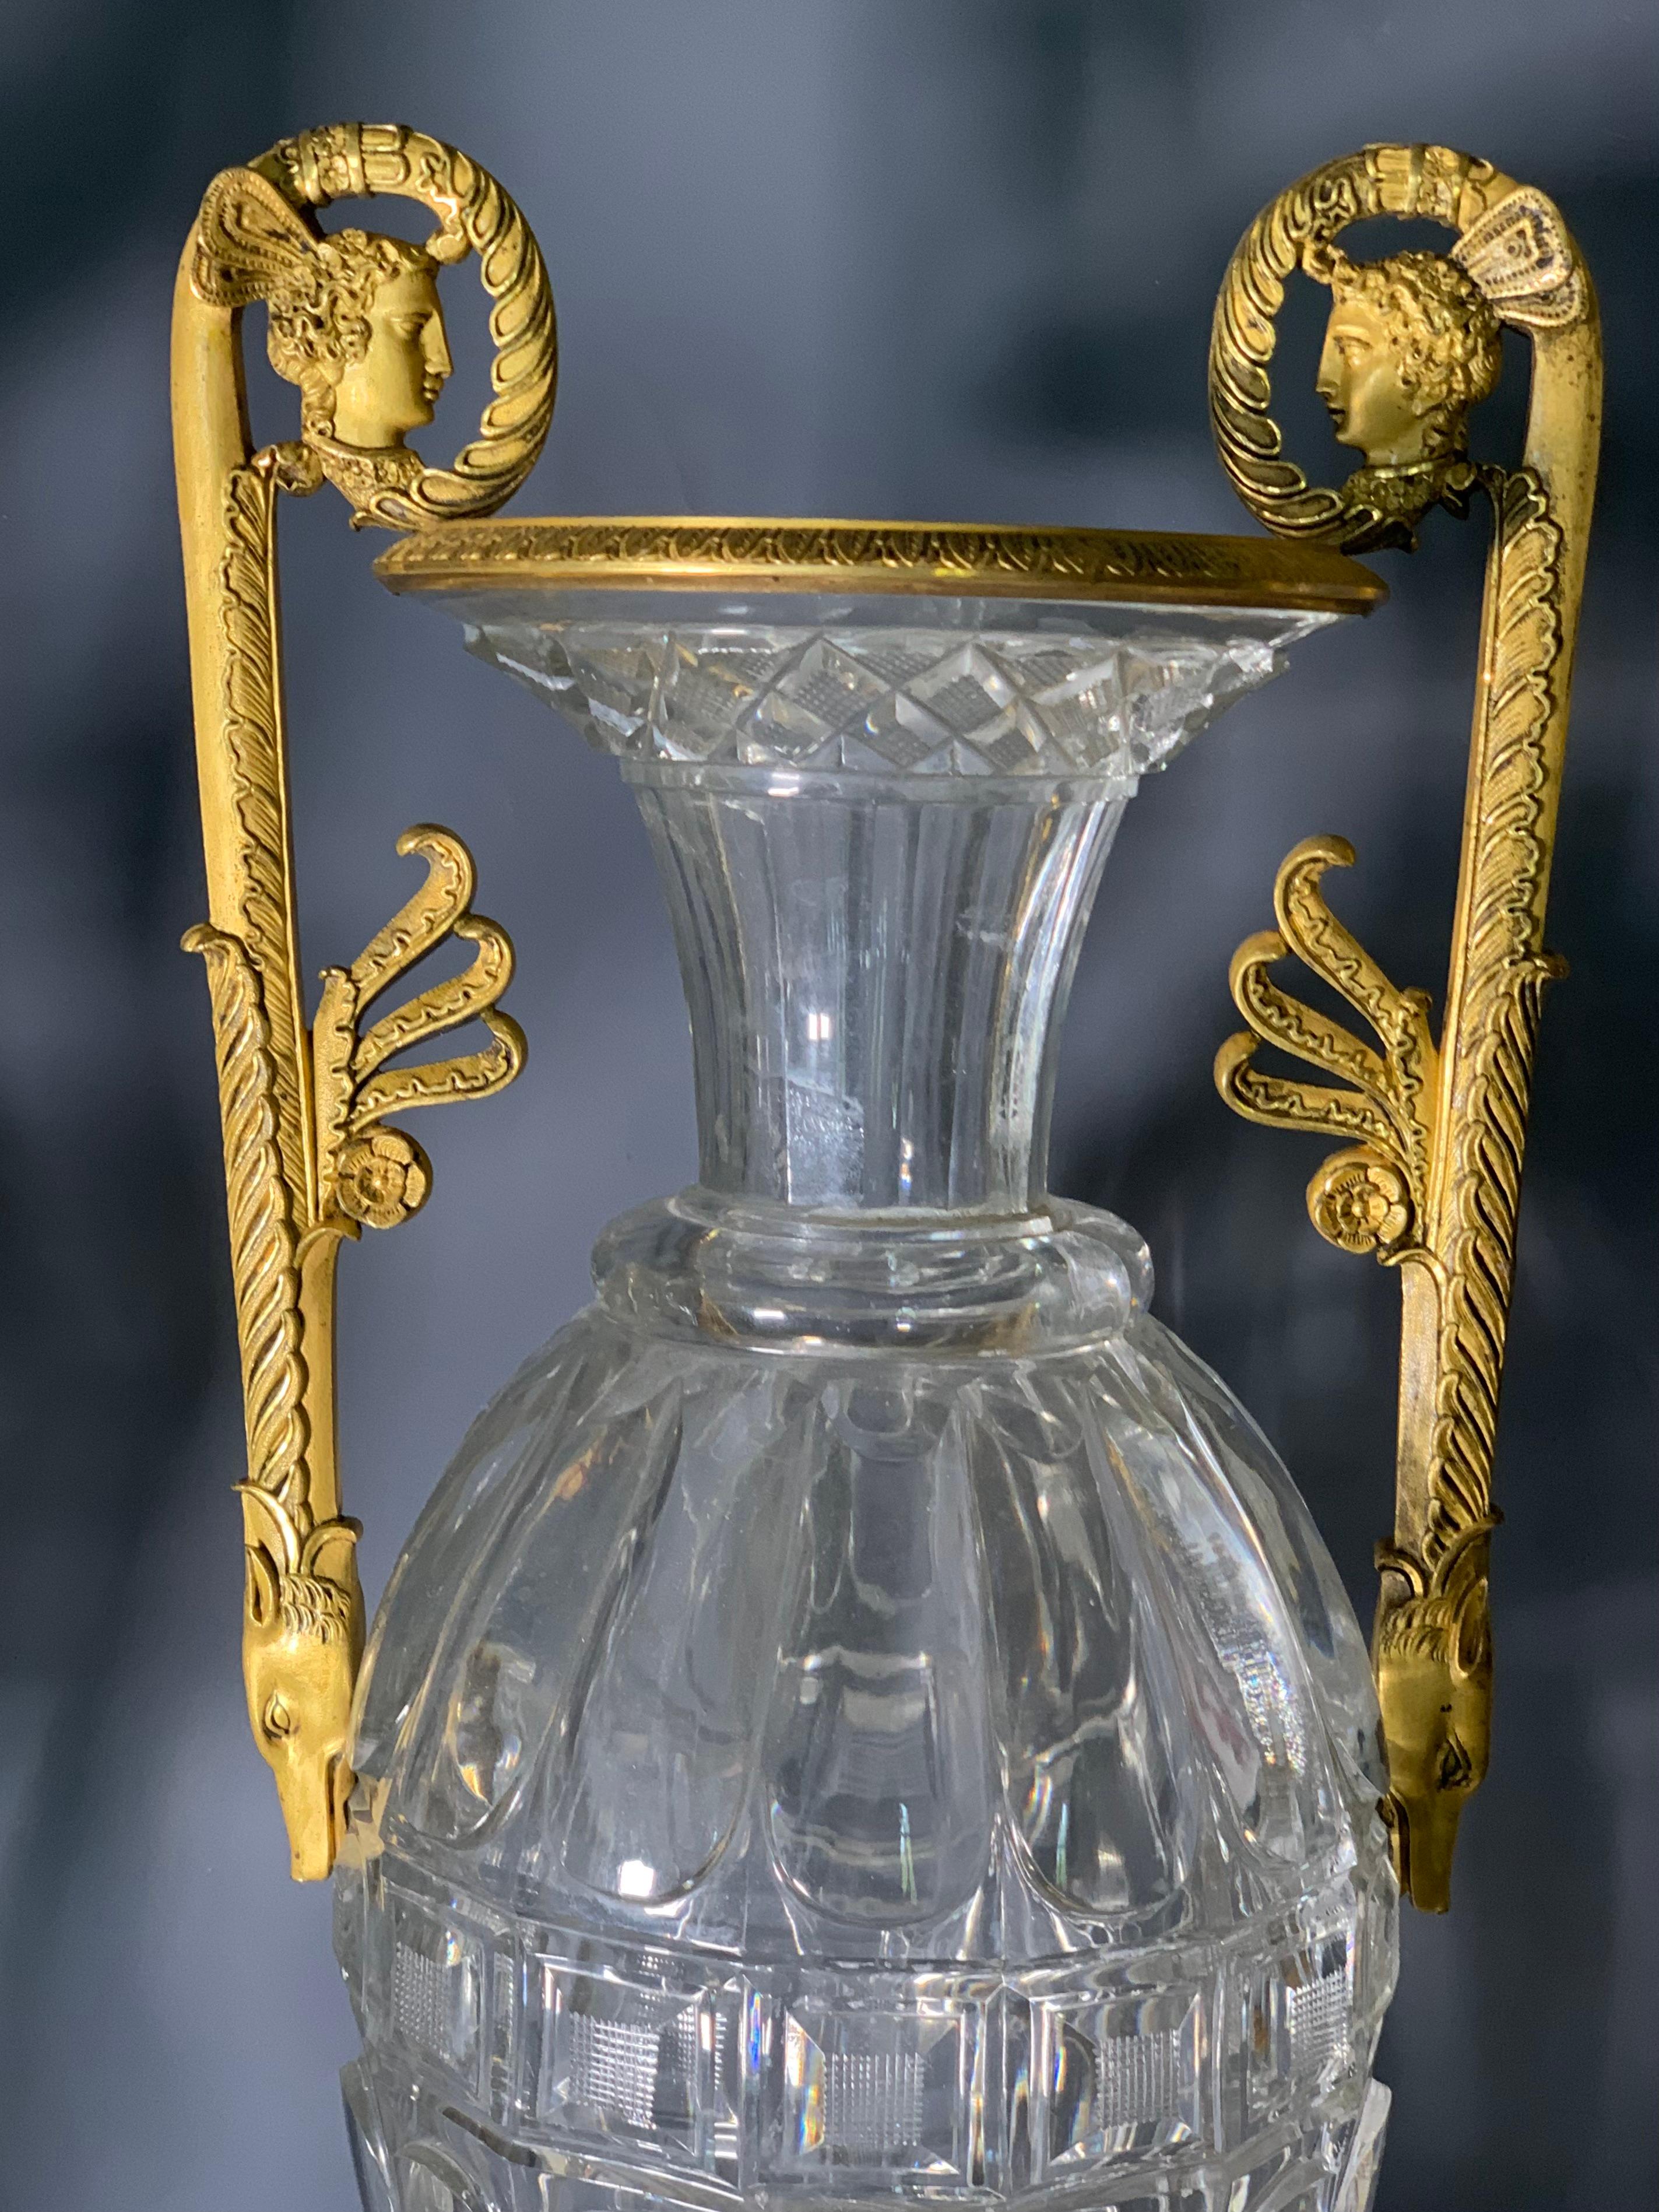 Remarquable  vase à fuseau en cristal taillé lourd. 
Probablement Cristallerie du Creusot  (Baccarat) ou  Verrerie impériale de Saint-Pétersbourg, vers 1800.
Le luminaire aux profils antiques et aux têtes de loup, en bronze doré au mercure